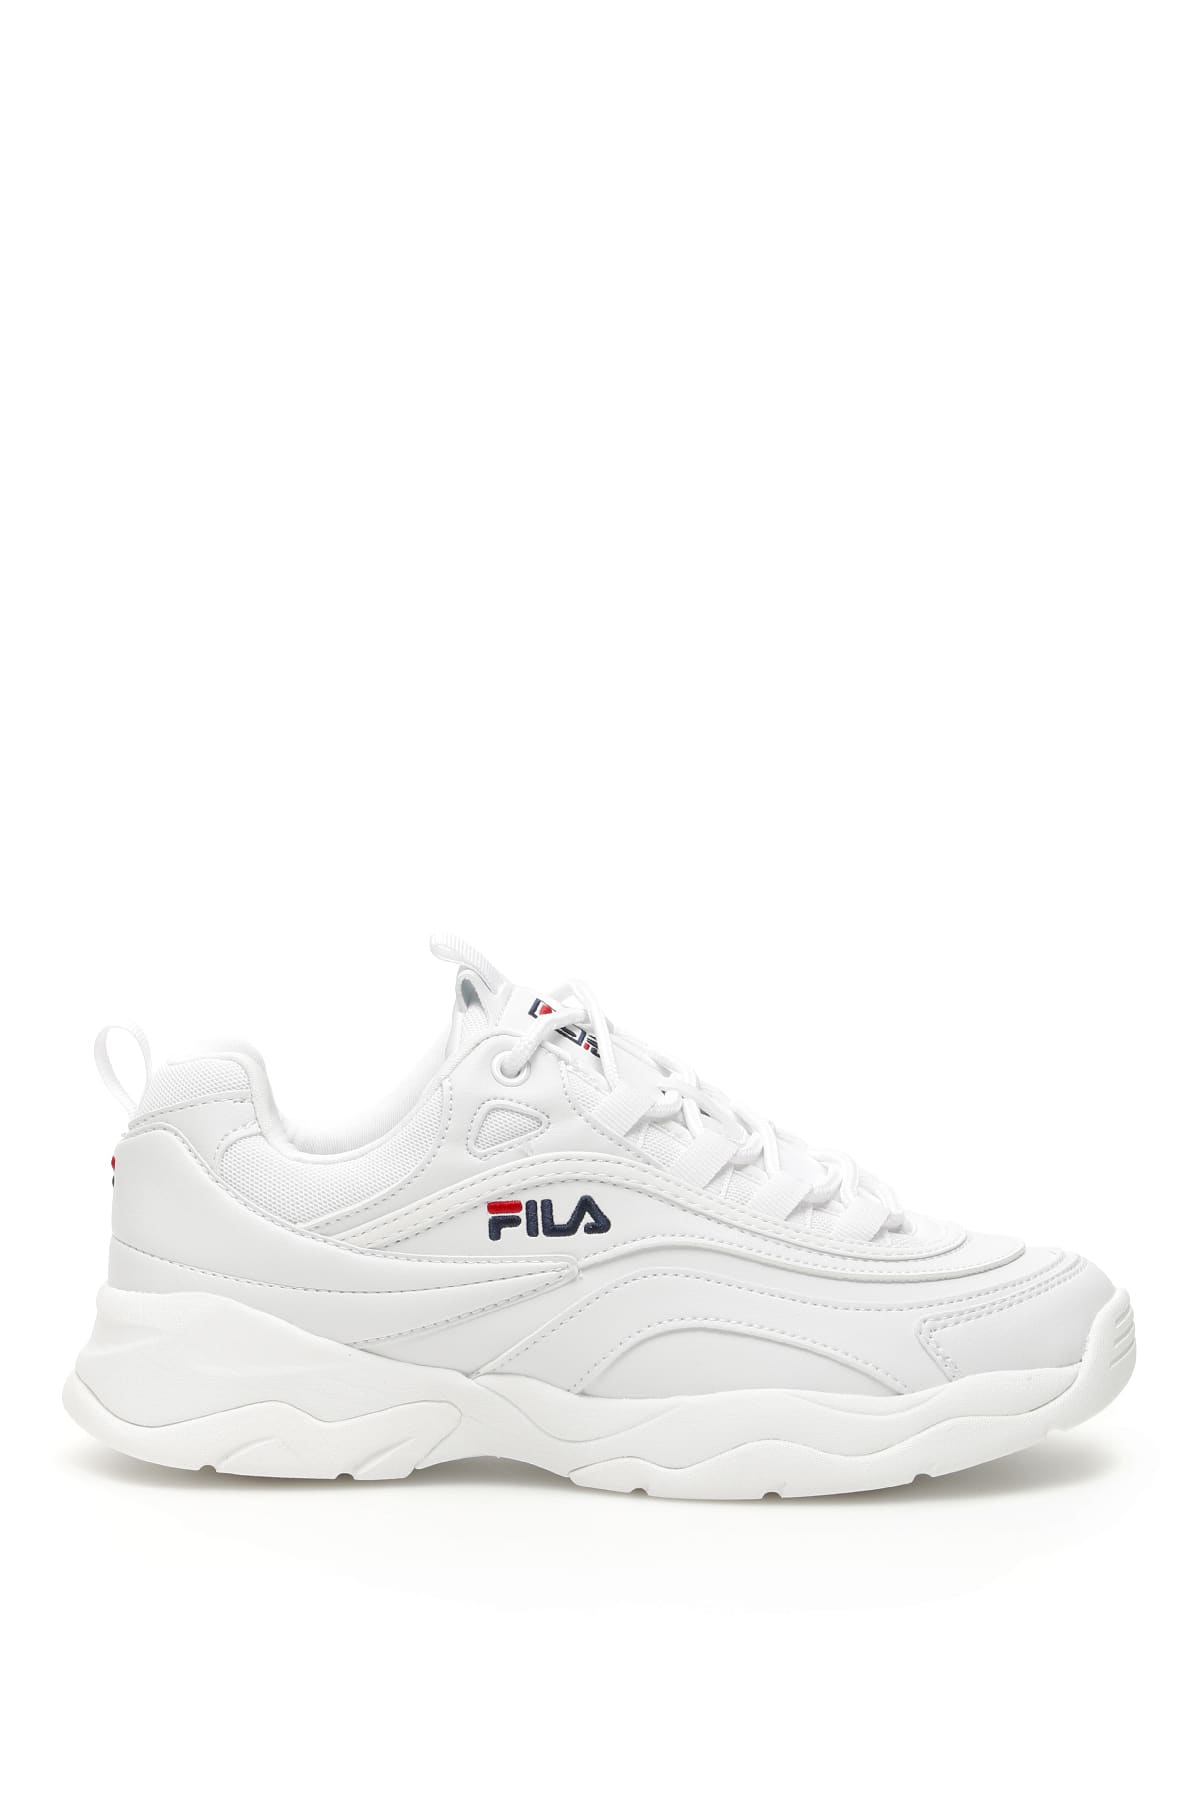 Fila Sneakers | italist, ALWAYS LIKE A SALE